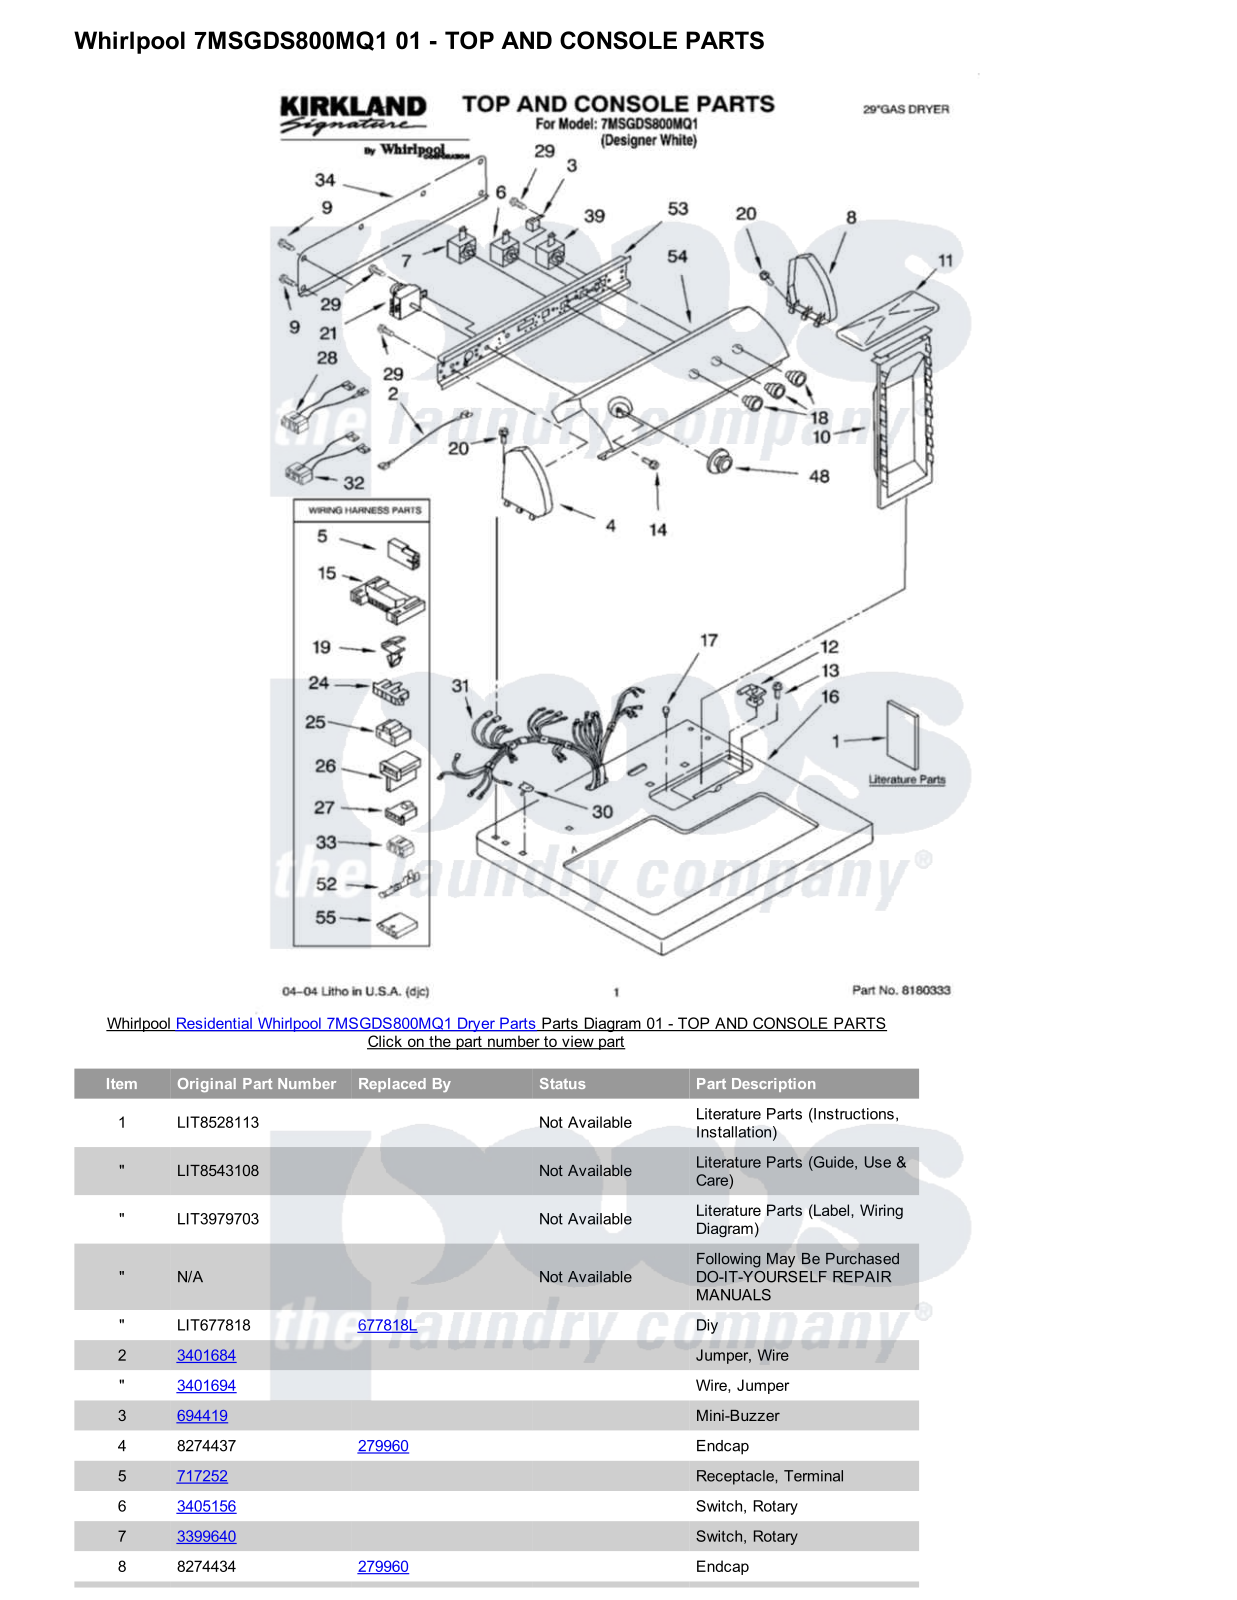 Whirlpool 7MSGDS800MQ1 Parts Diagram